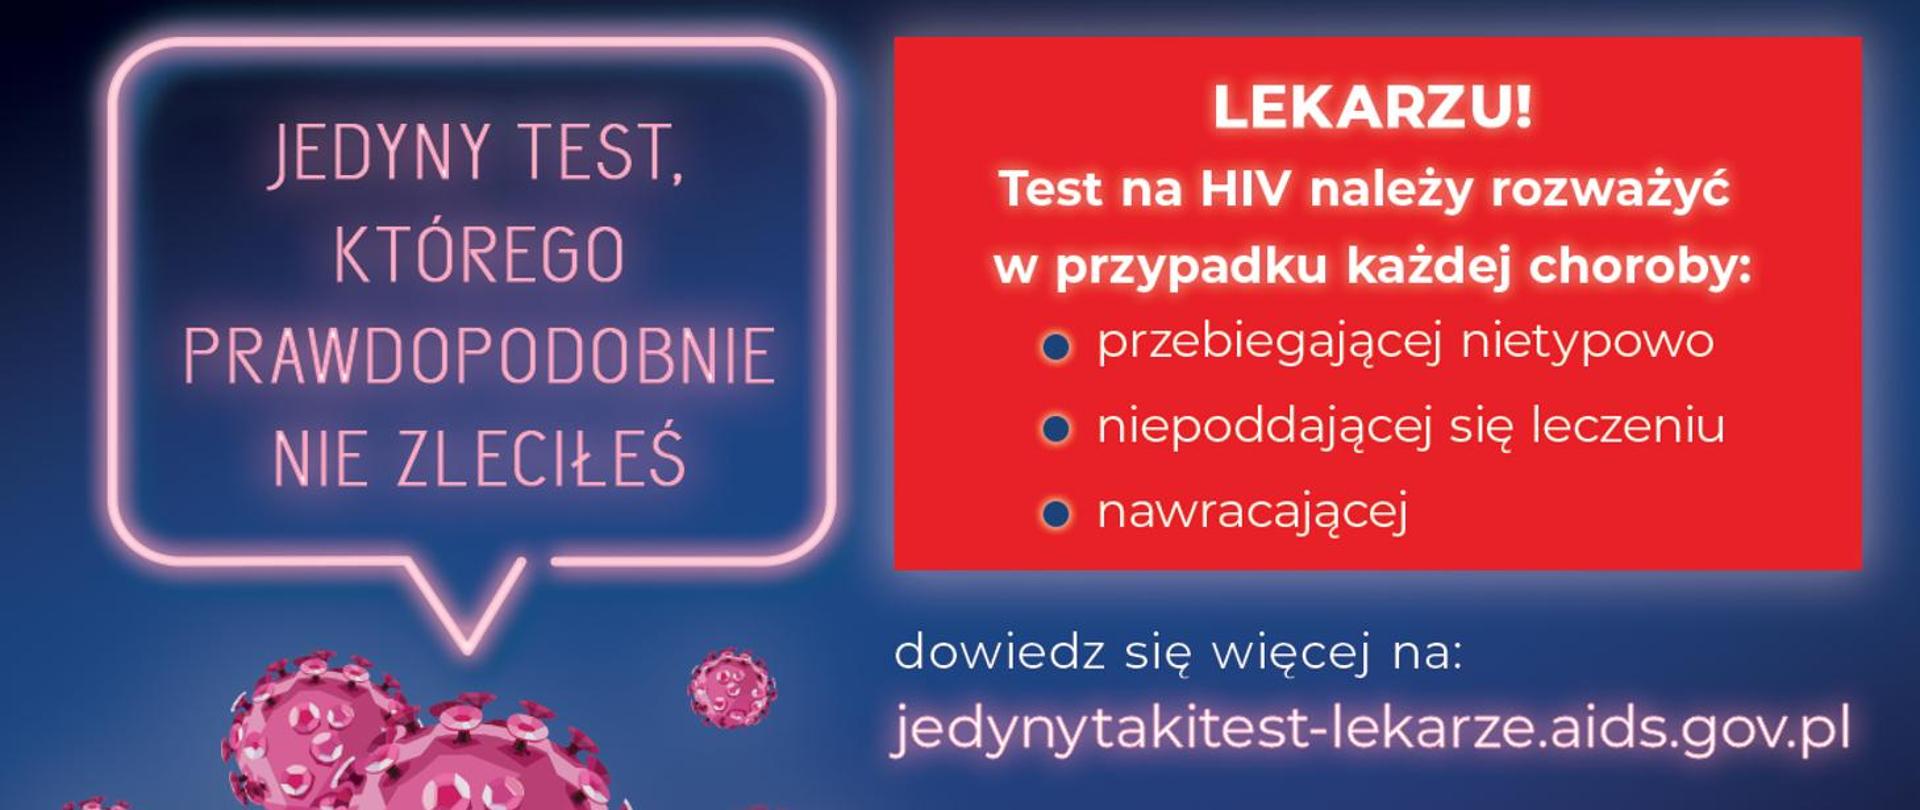 Jedyny test, którego prawdopodobnie nie zleciłeś.
Lekarzu! Test na HIV należy rozważyć w przypadku każdej choroby: przebiegającej nietypowo, niepoddającej się leczeniu, nawracającej.